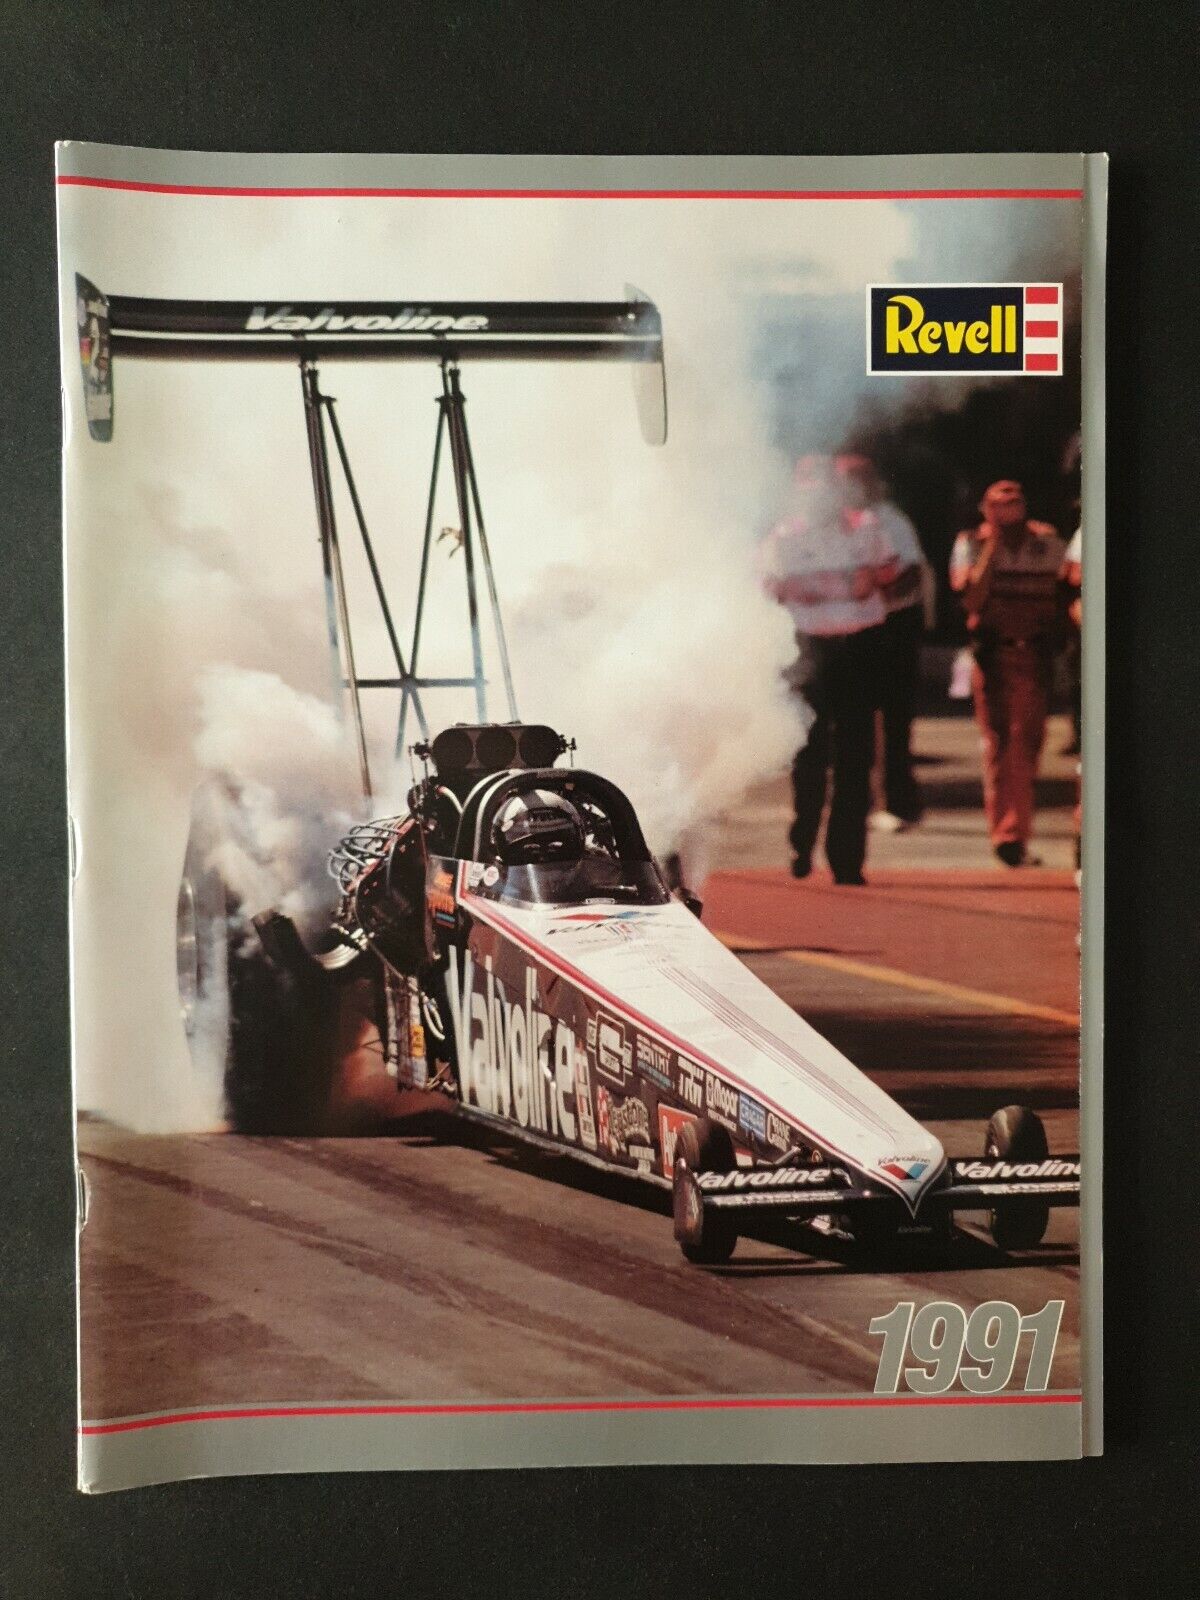 REVELL 1991 MODEL CAR BOAT JET Advertising Brochure Catalogue Handbook + POSTER